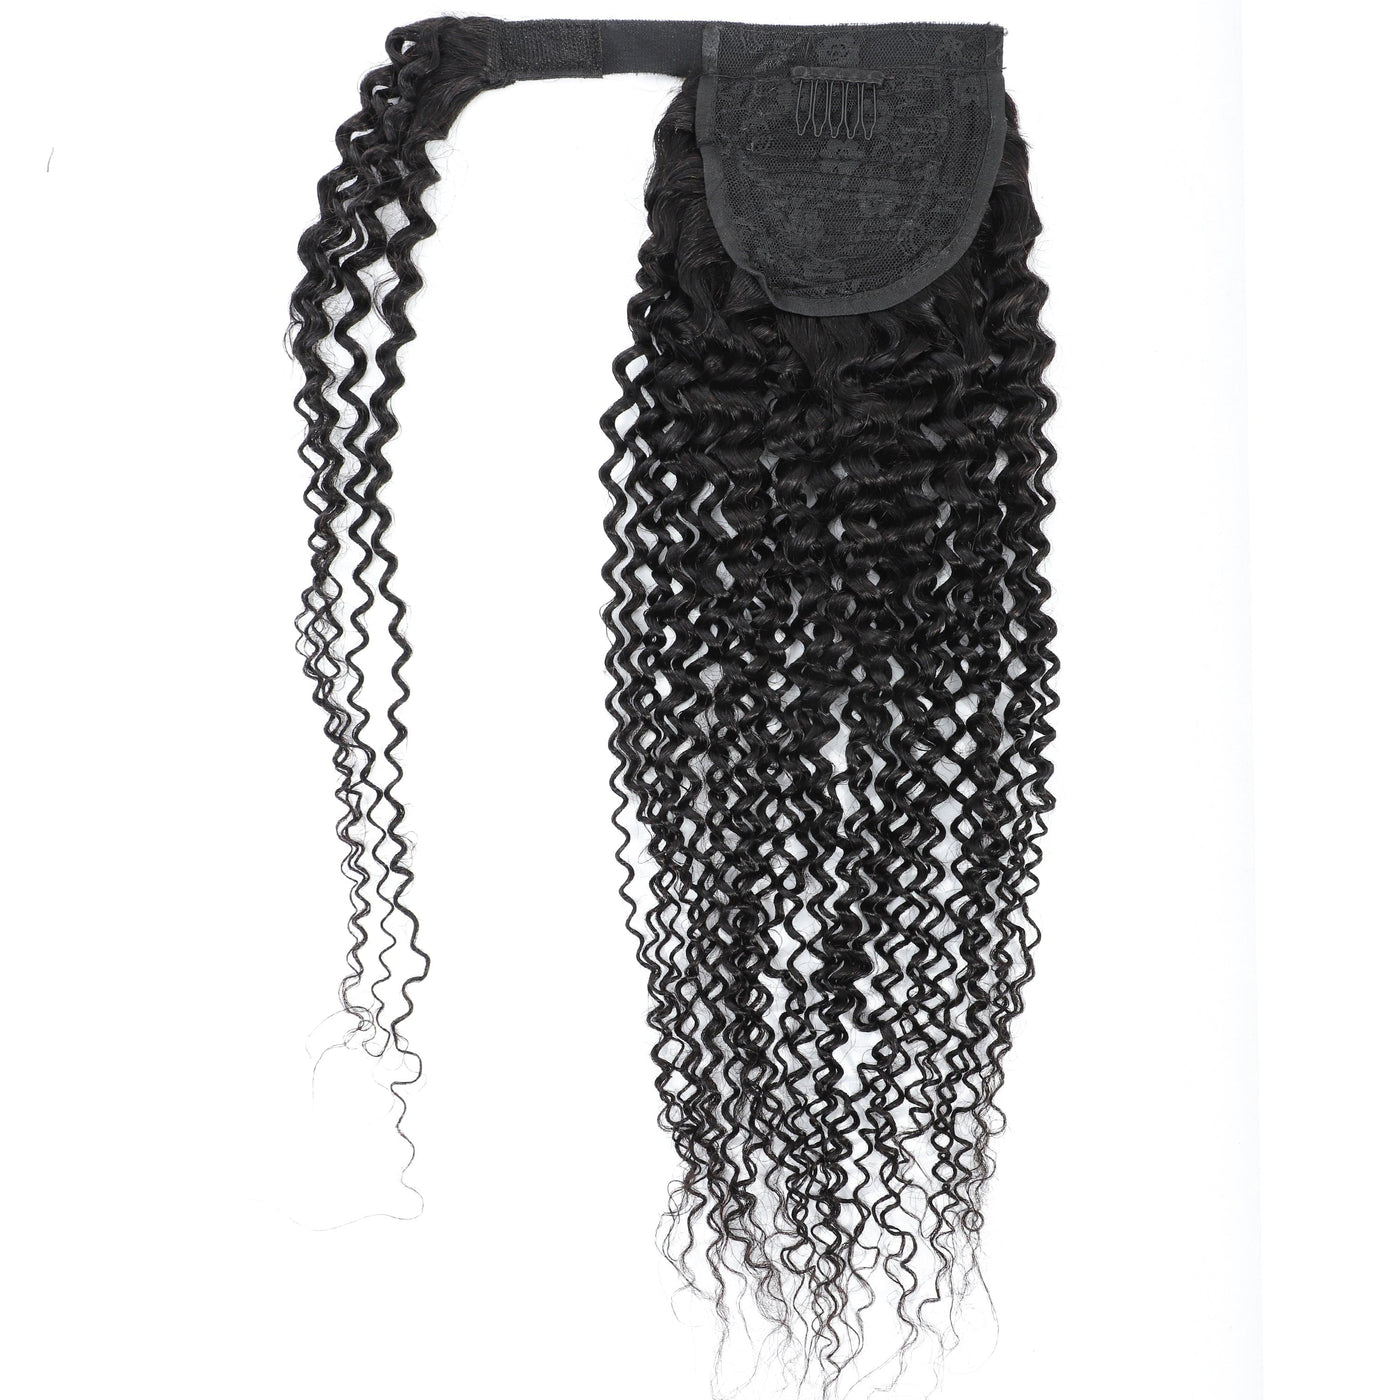 Extensões de cabelo humano brasileiro encaracolado crespo enrolado ao redor do rabo de cavalo para mulheres 